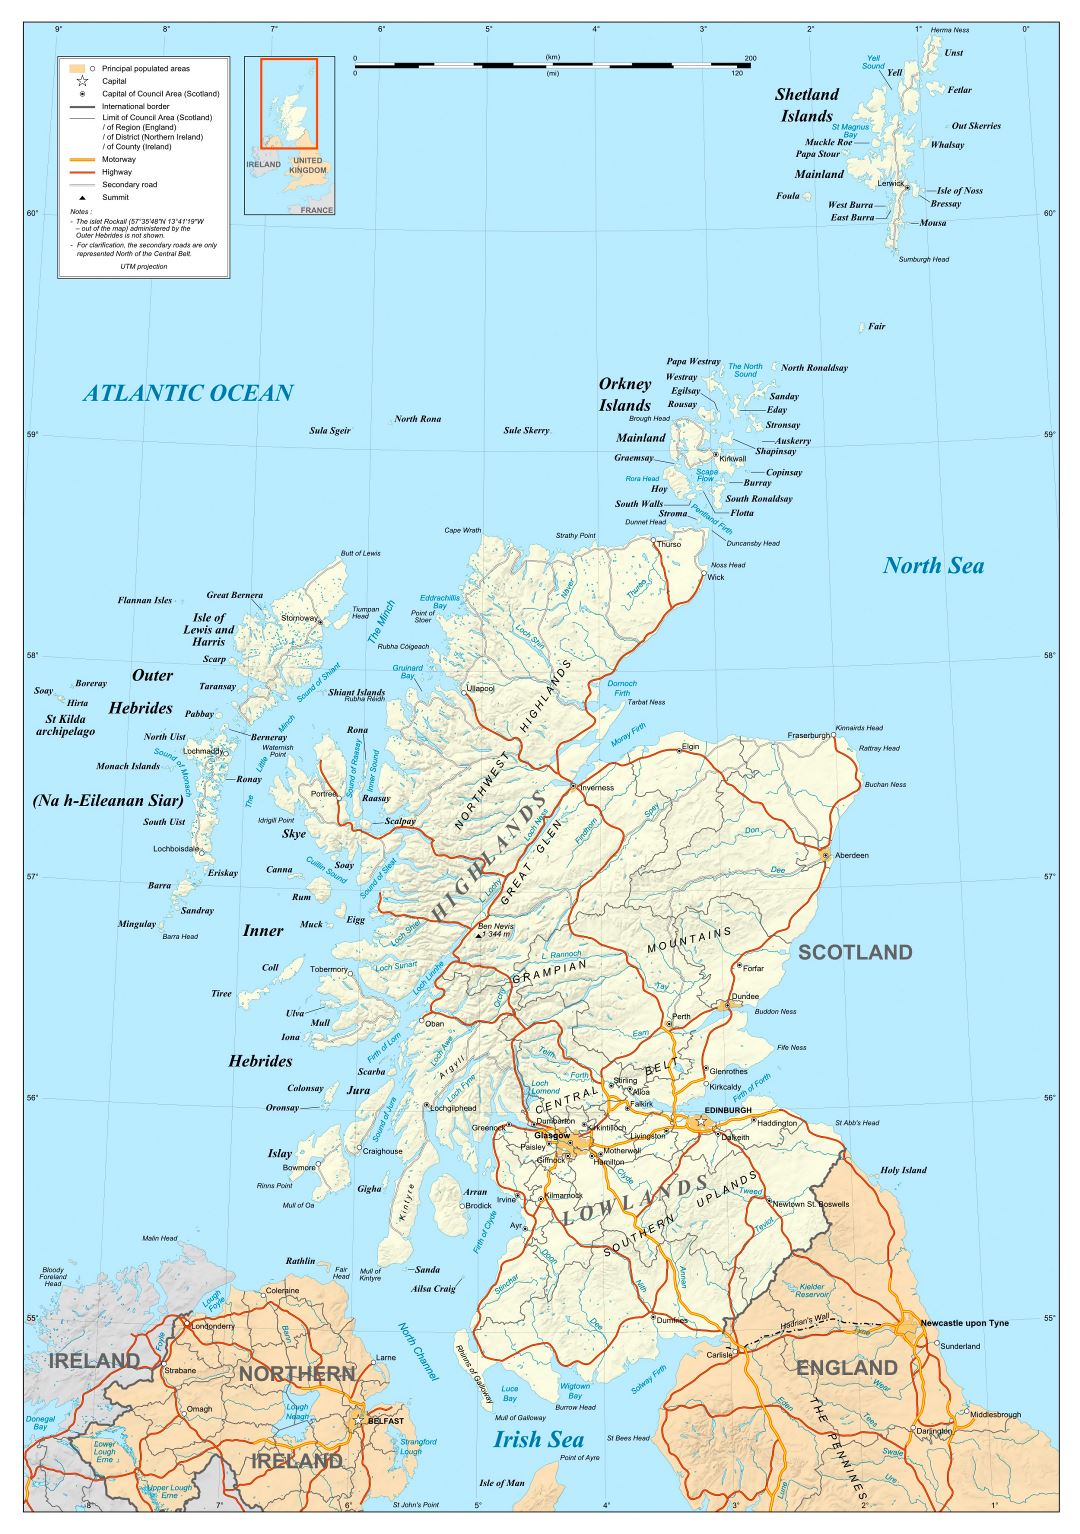 Grande detallado mapa político de Escocia